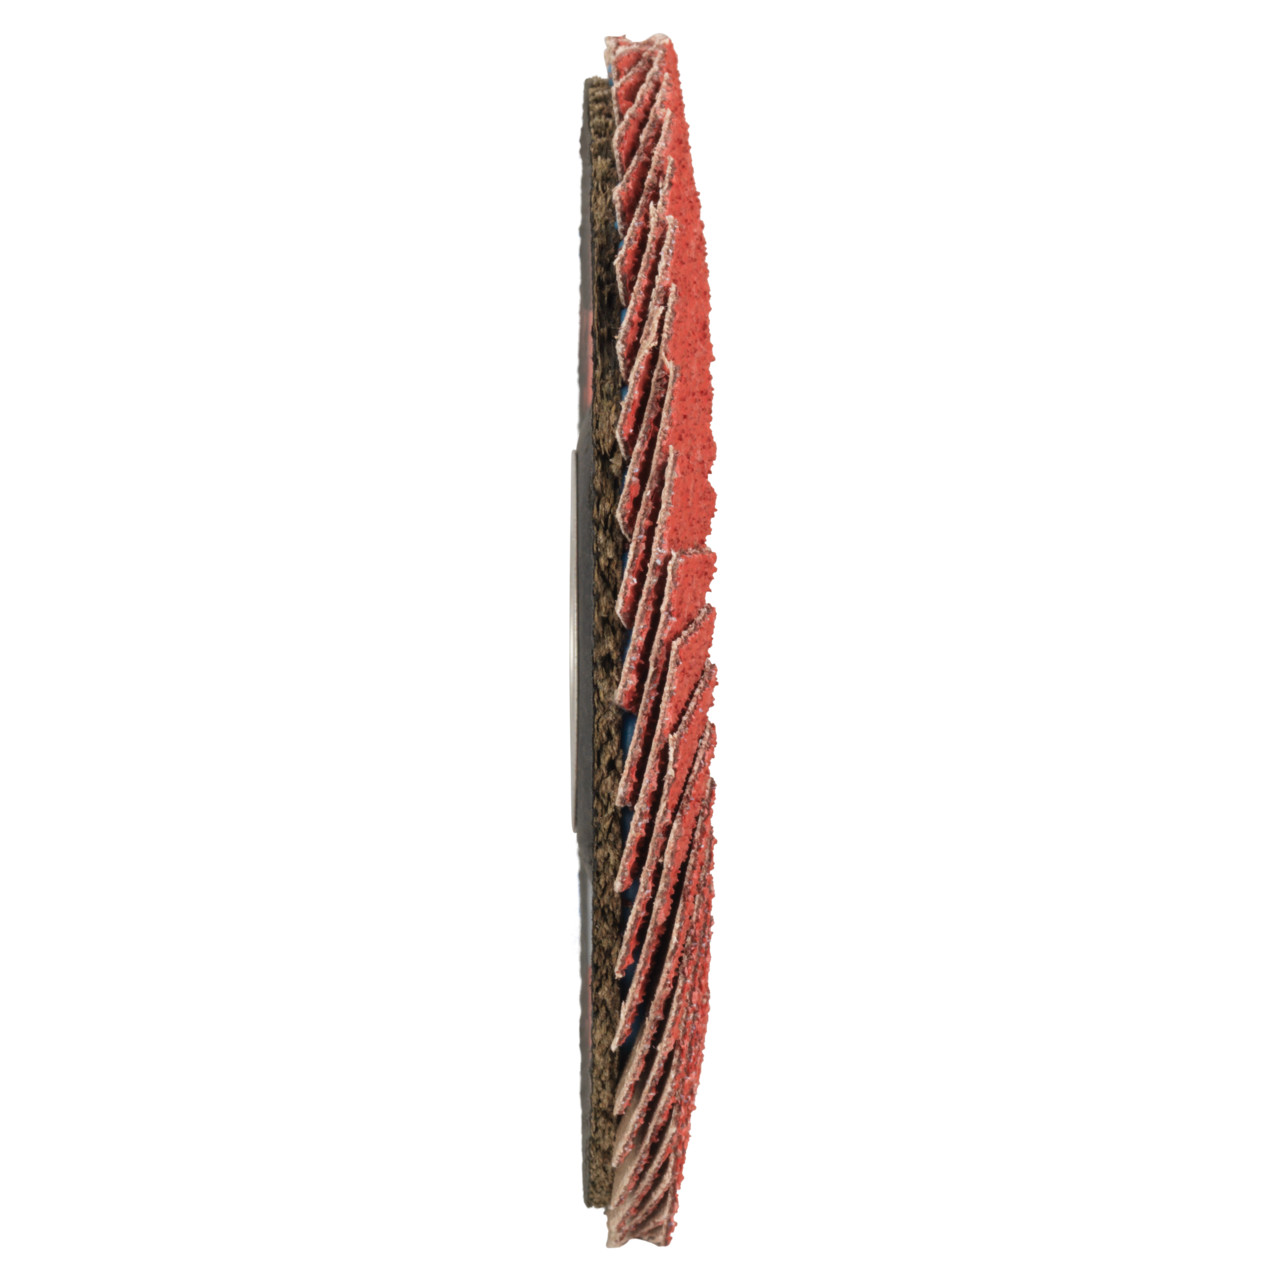 Tyrolit Arandela dentada DxH 178x22,23 CERÁMICA para acero inoxidable, P80, forma: 27A - diseño acodado (diseño del cuerpo portador de fibra de vidrio), Art. 34166686